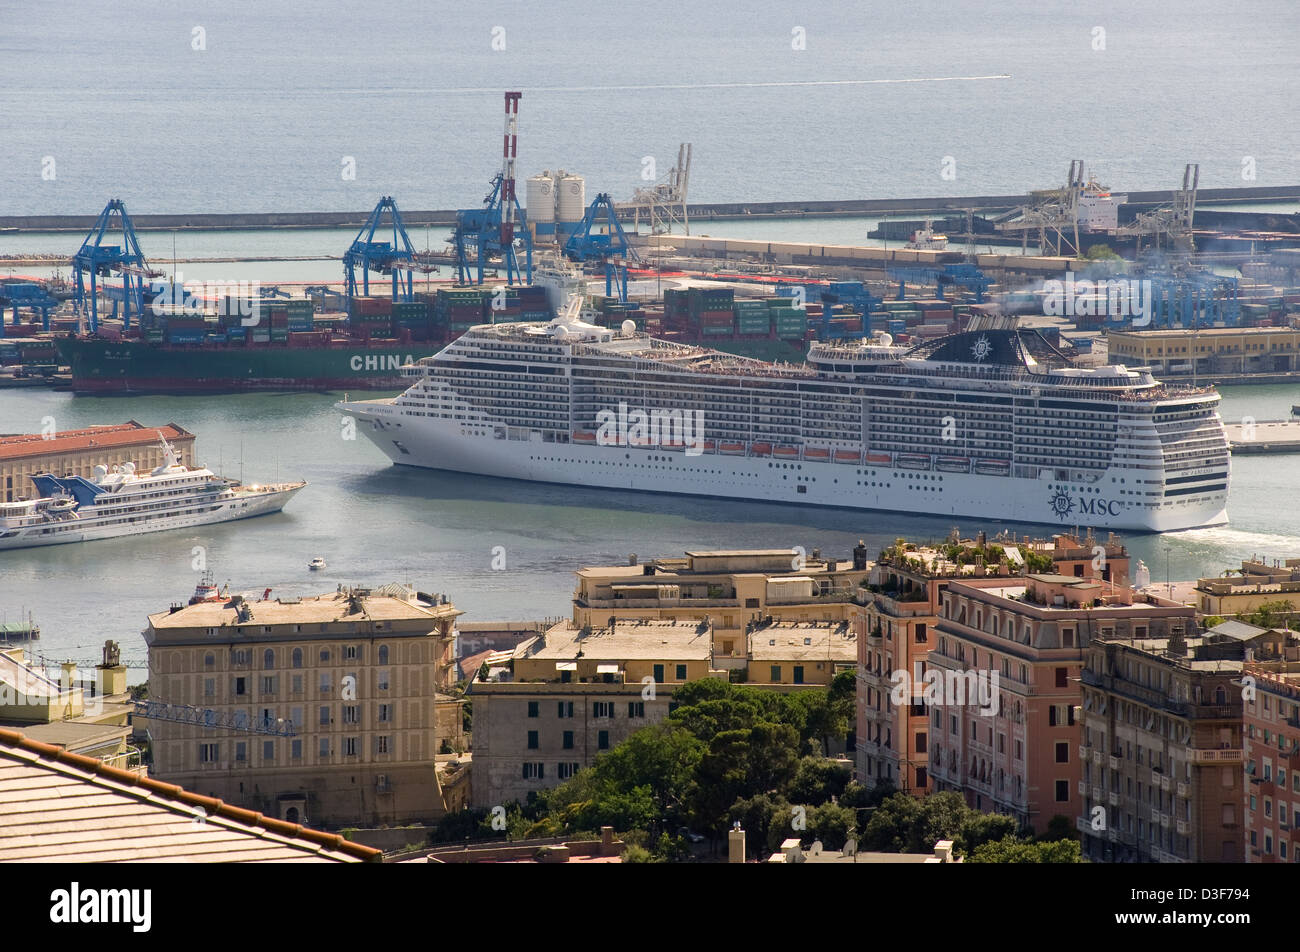 cruise ship genoa italy